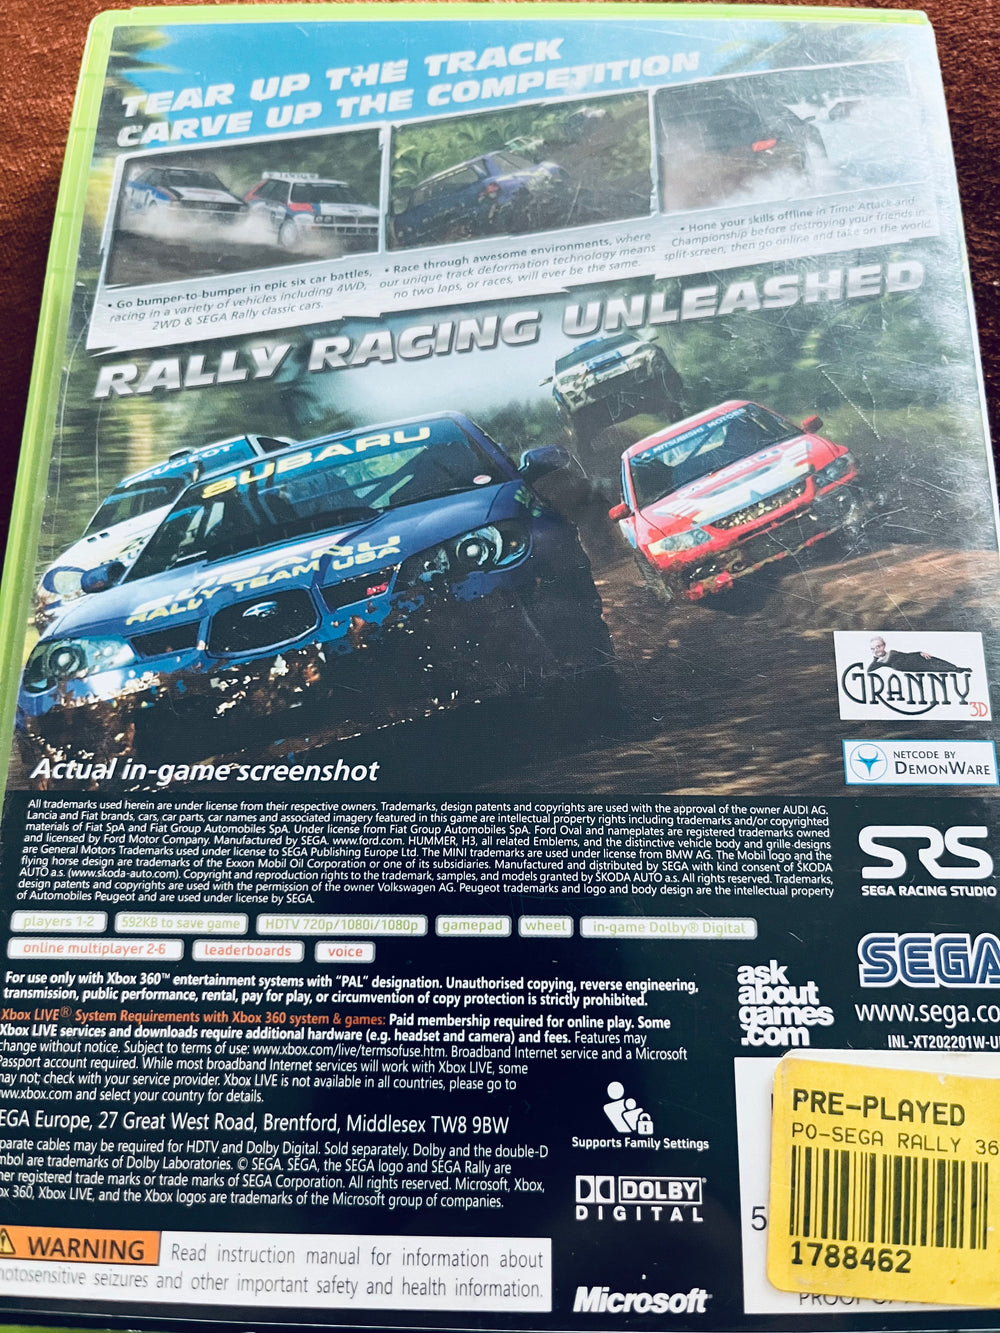 Sega Rally. Xbox 360.